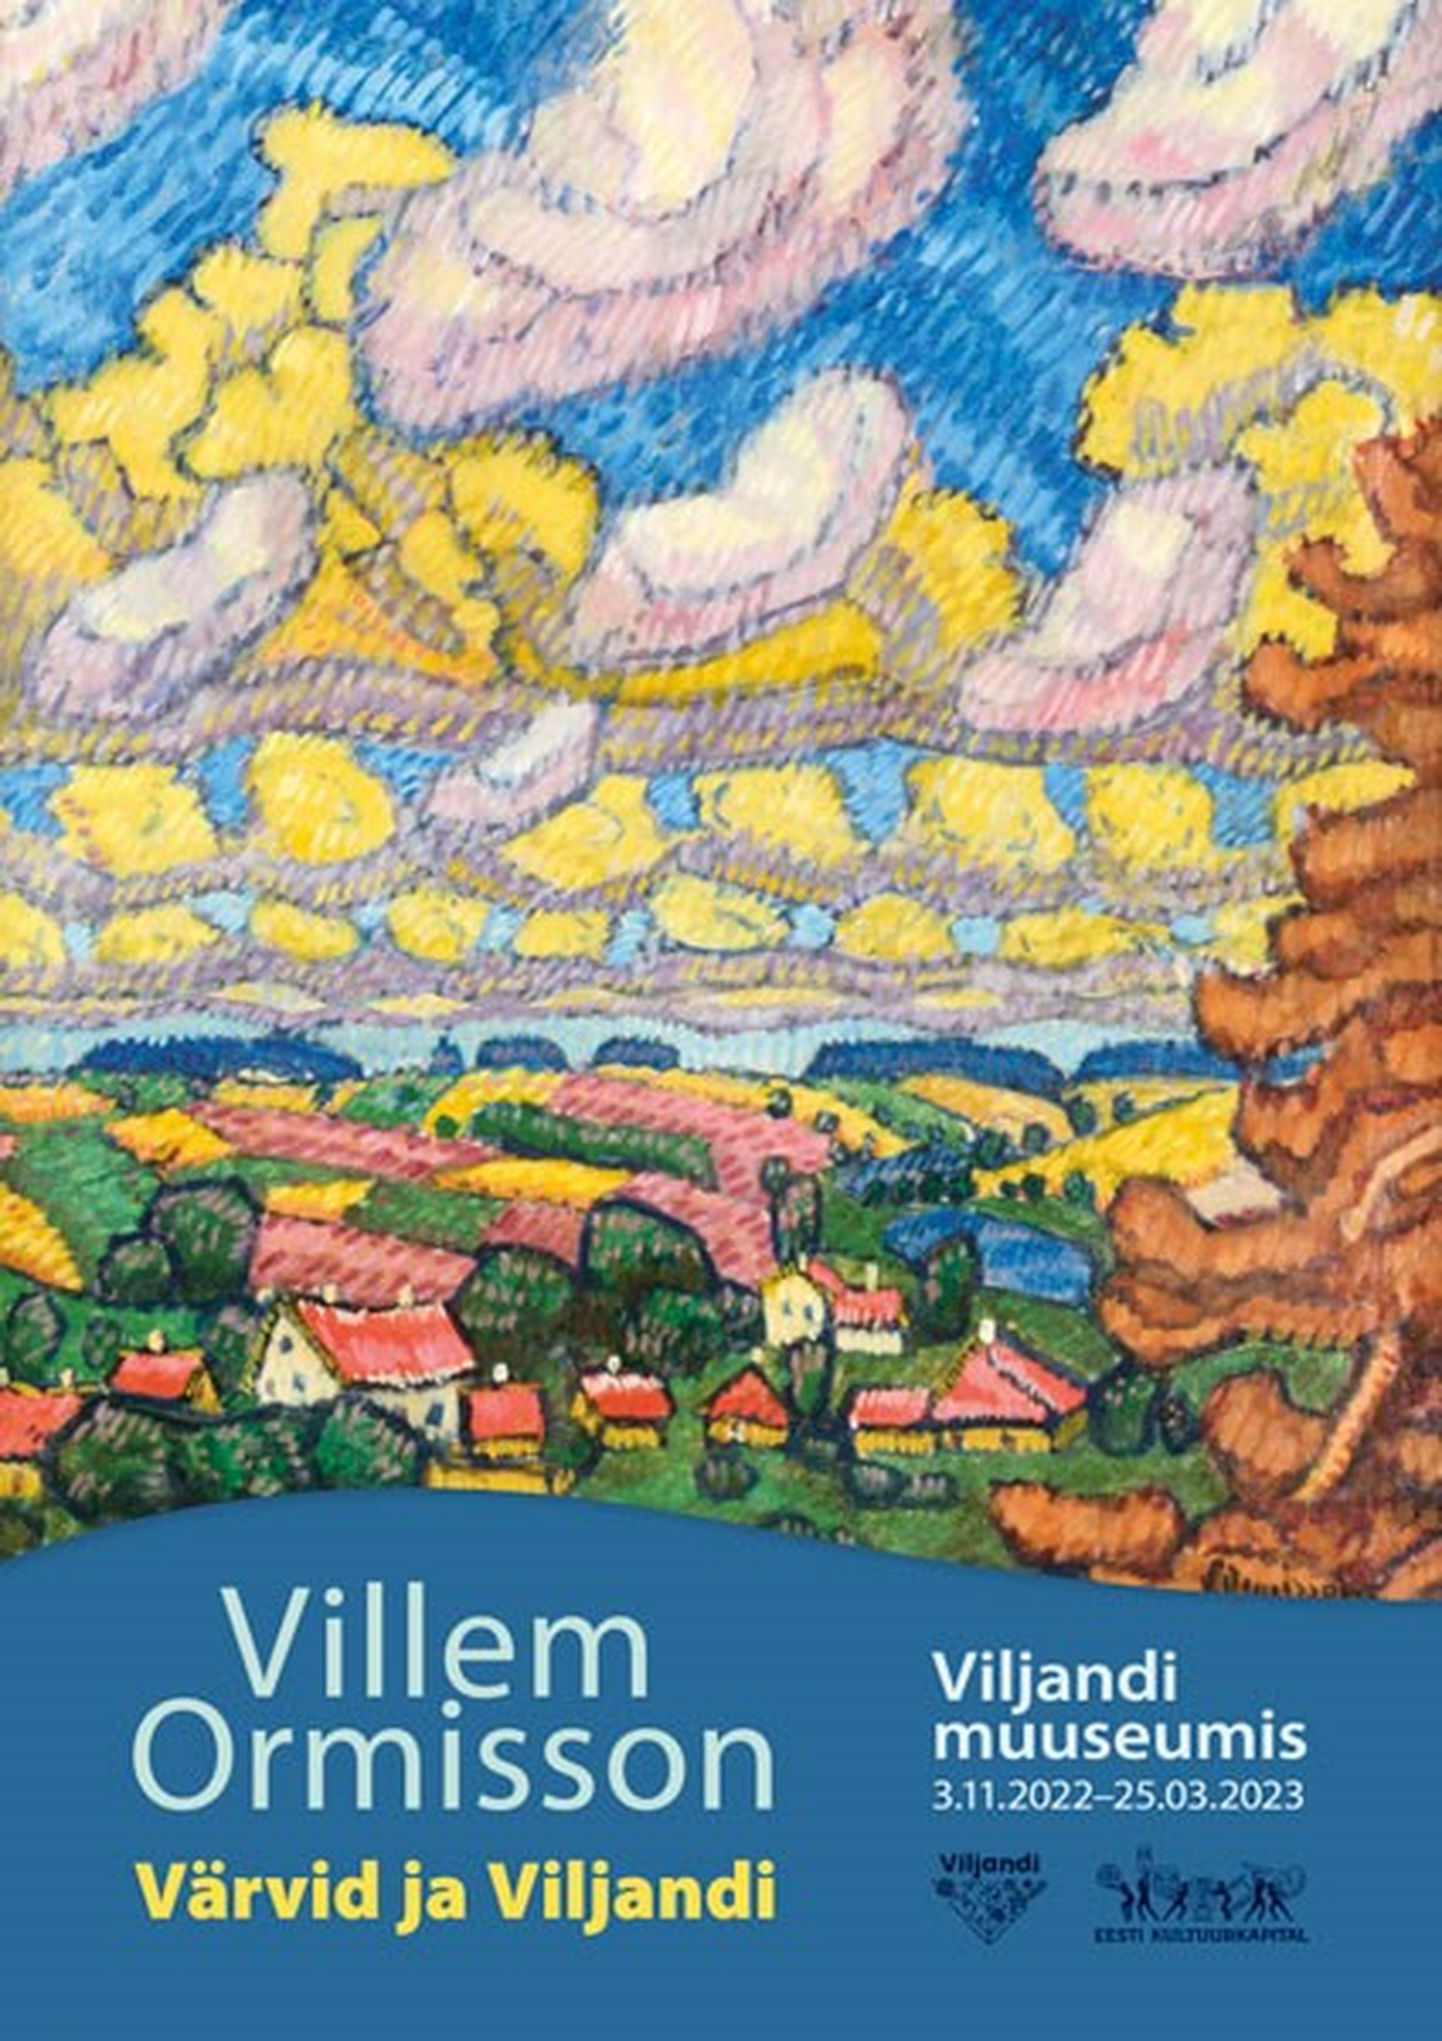 Näitus "Villem Ormisson. Värvid ja Viljandi" Viljandi muuseumis jääb vaadata 25. märtsini.